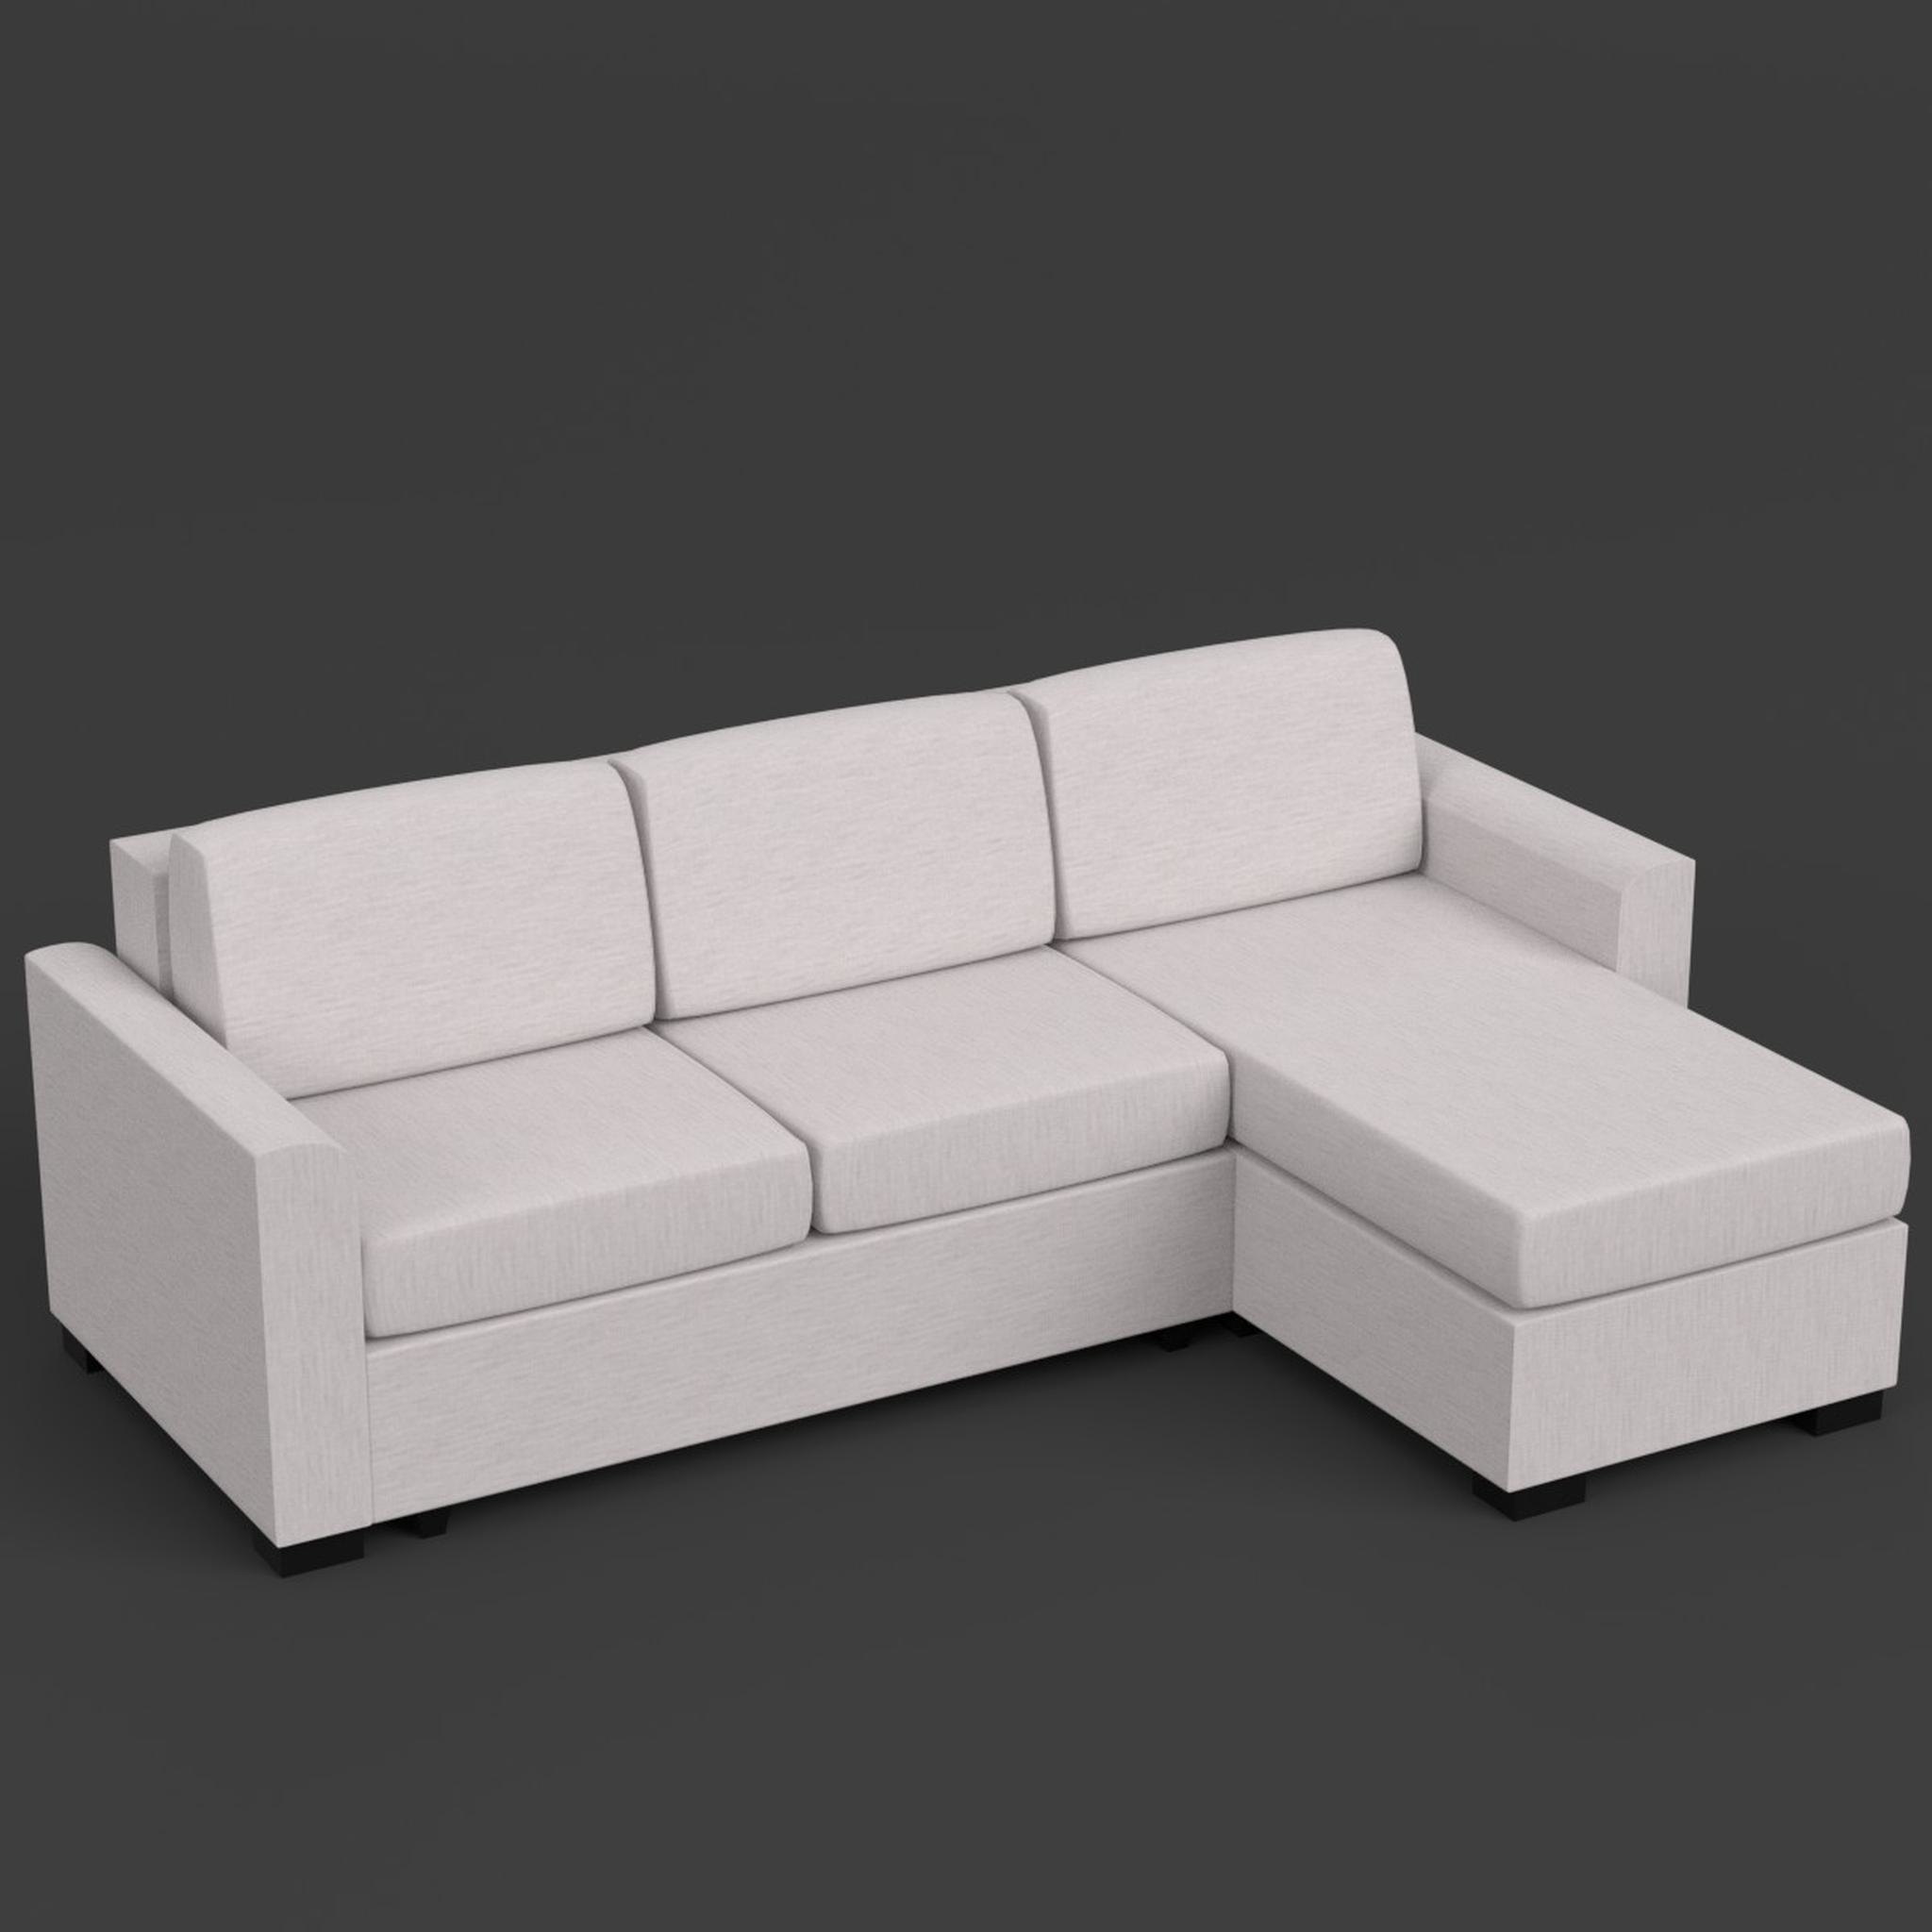 Моделирование дивана в blender